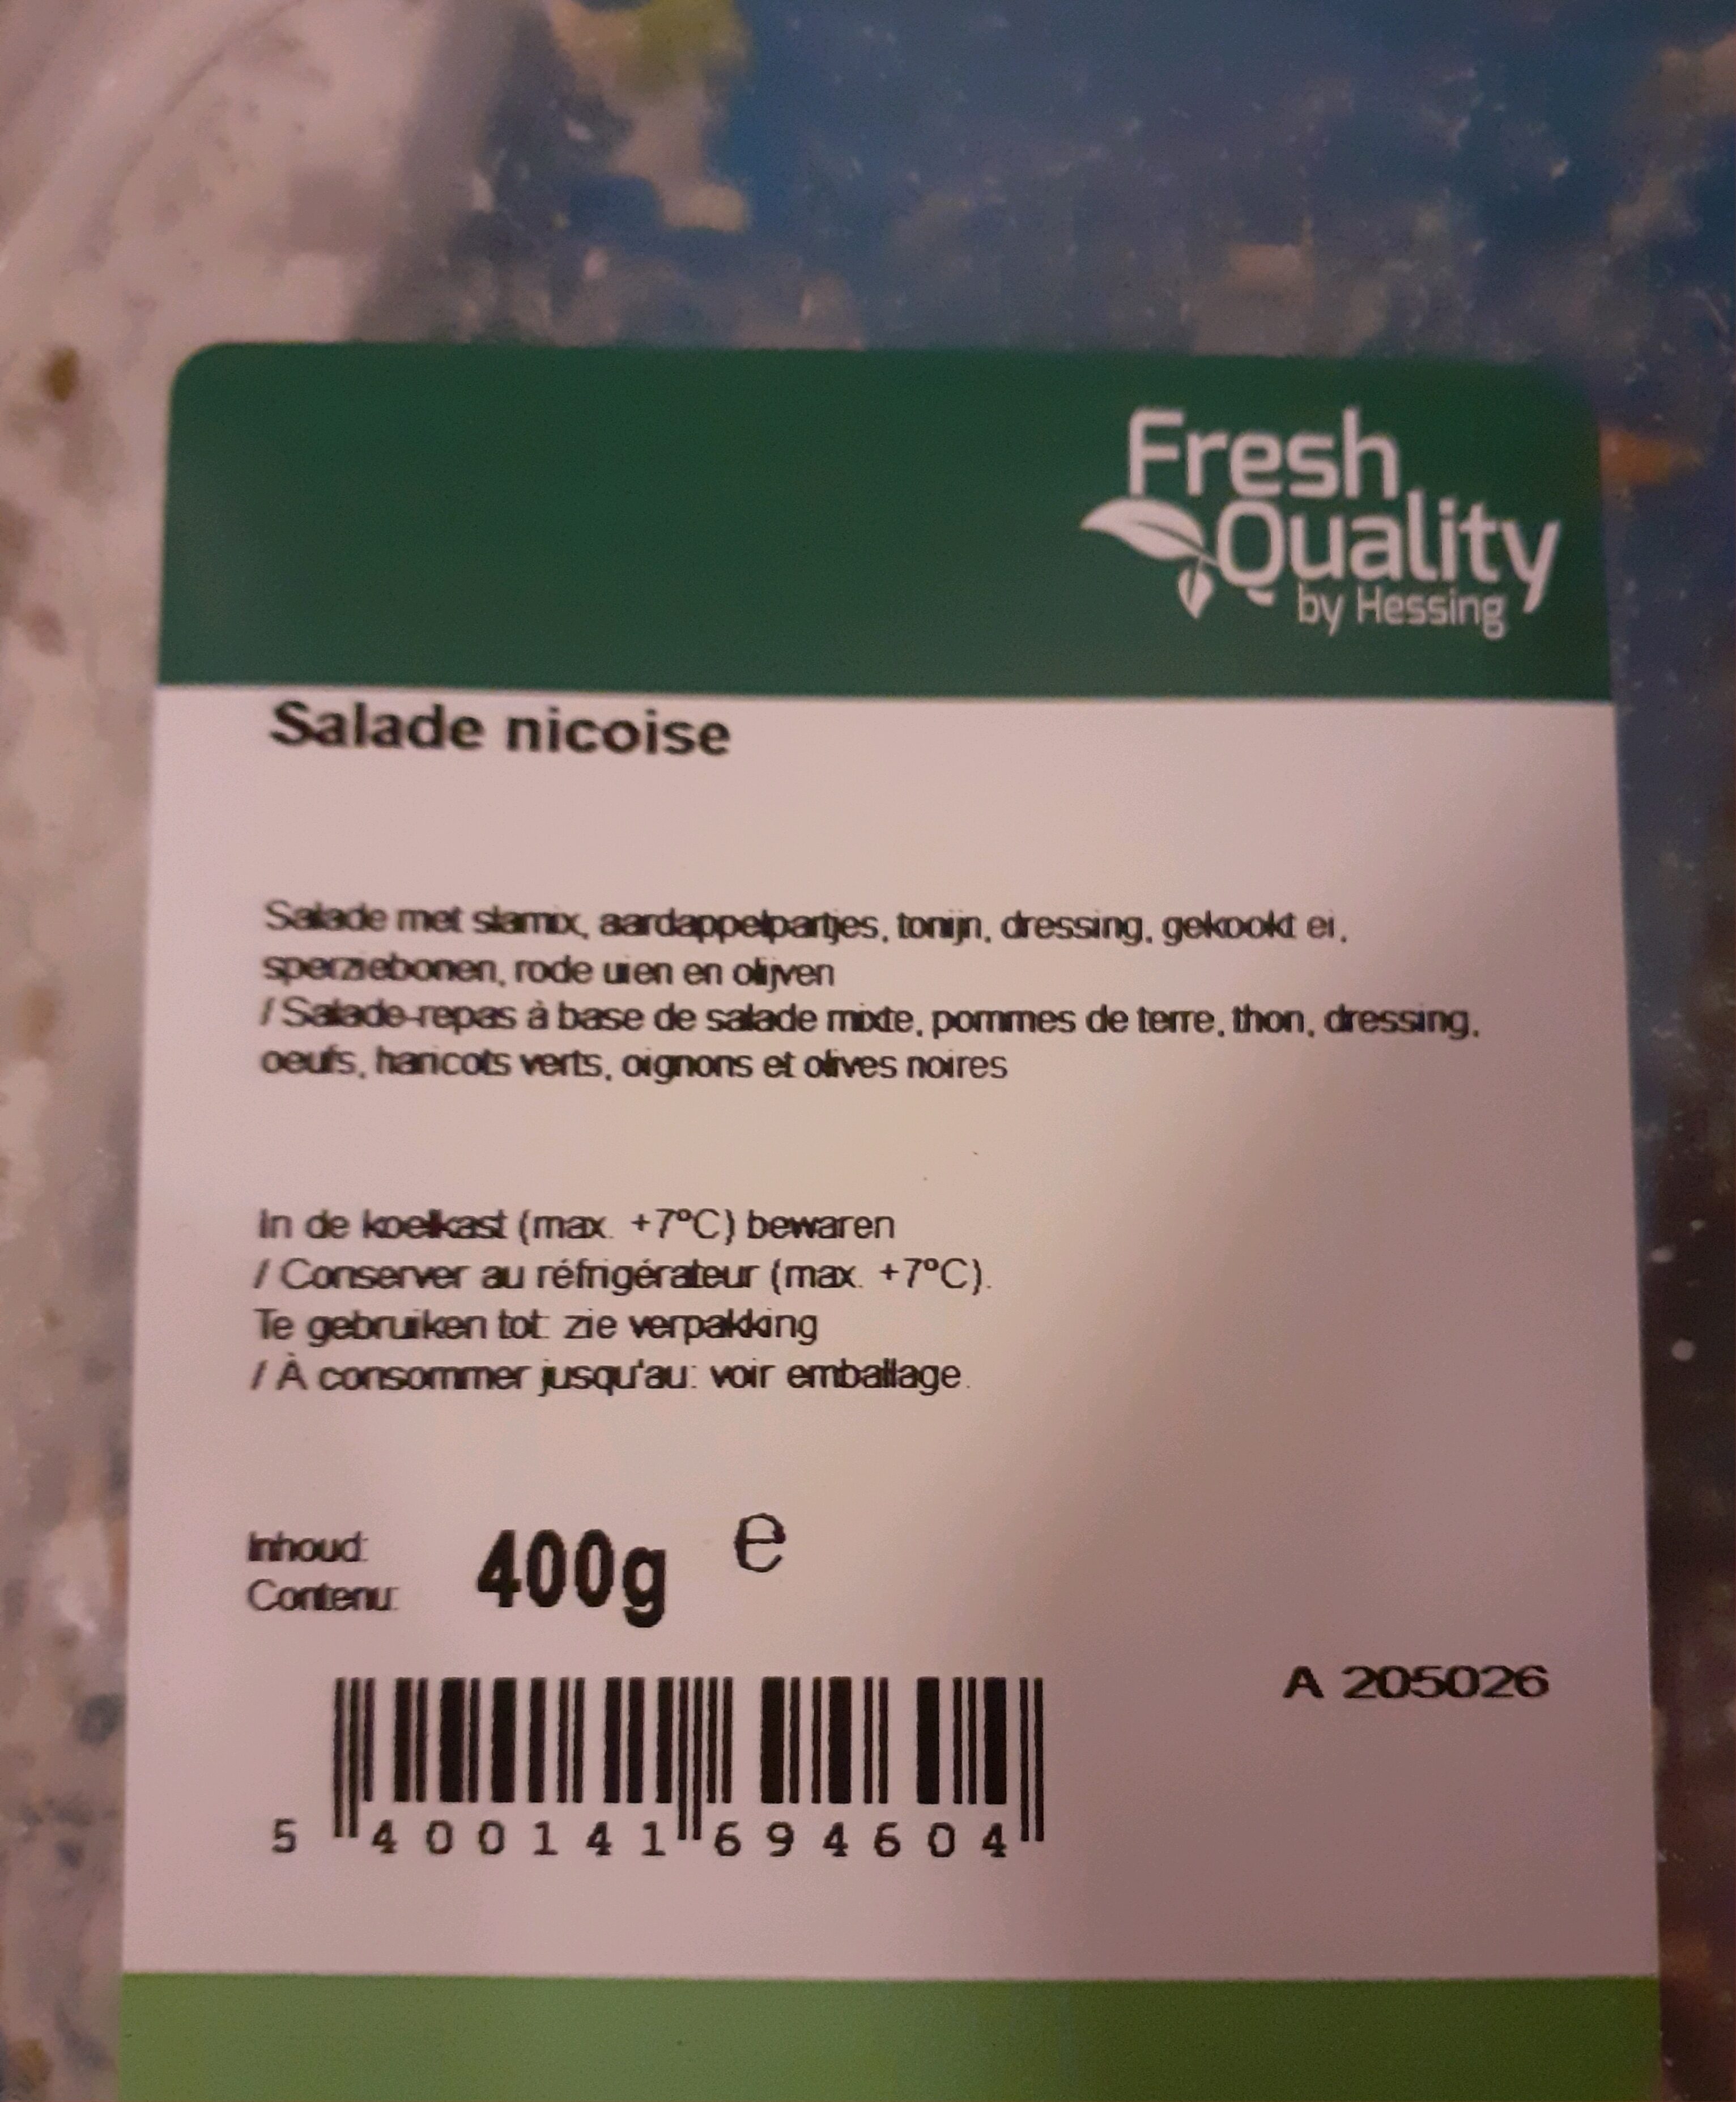 Salade nicoise - Product - fr